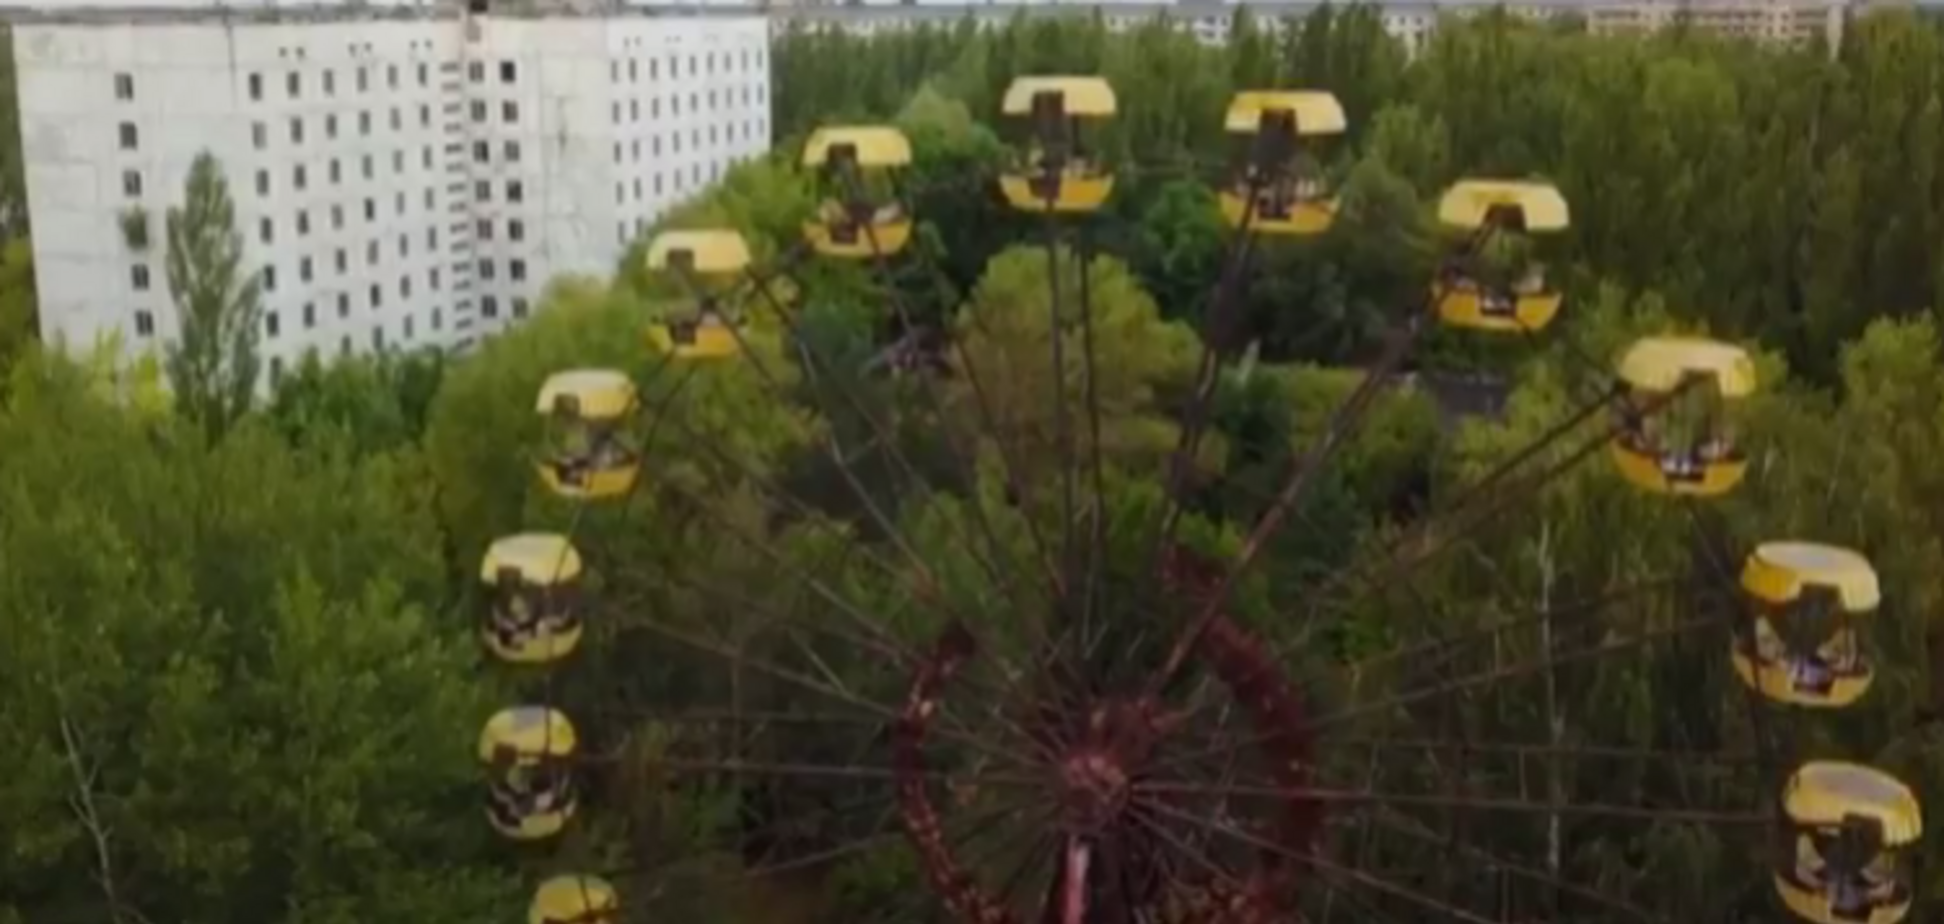 Поляки разозлили украинцев запуском 'мертвого' колеса обозрения в Припяти: видеофакт